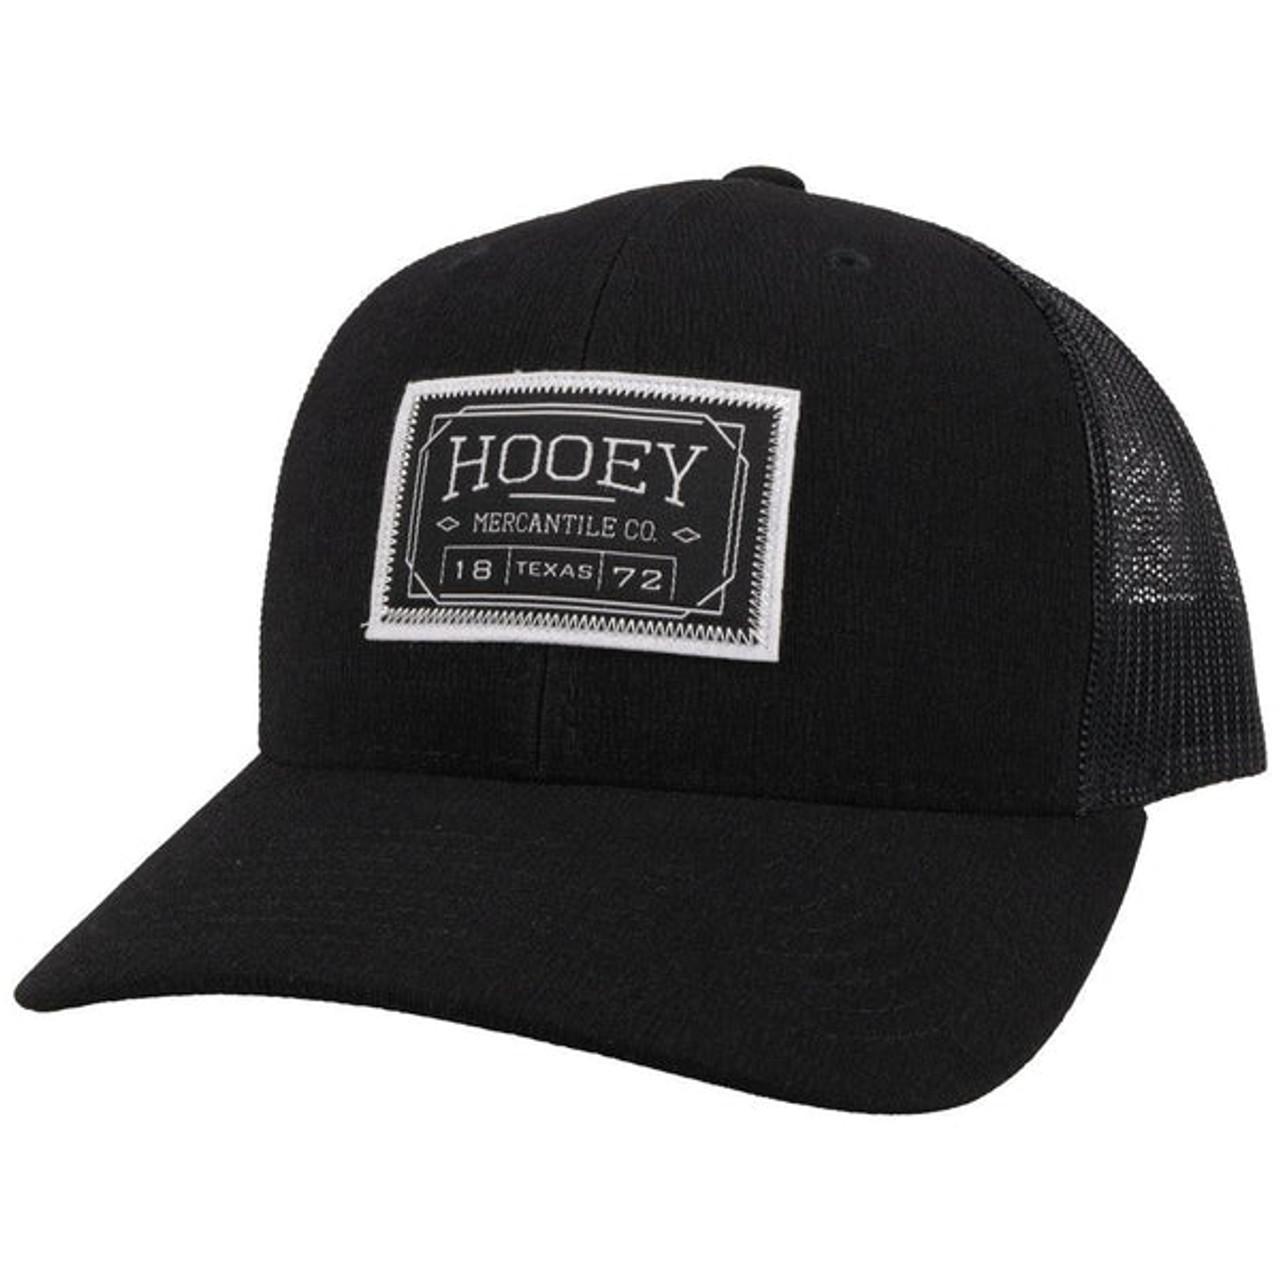 HOOEY DOC BLACK HAT - FRINGE WESTERN WEAR